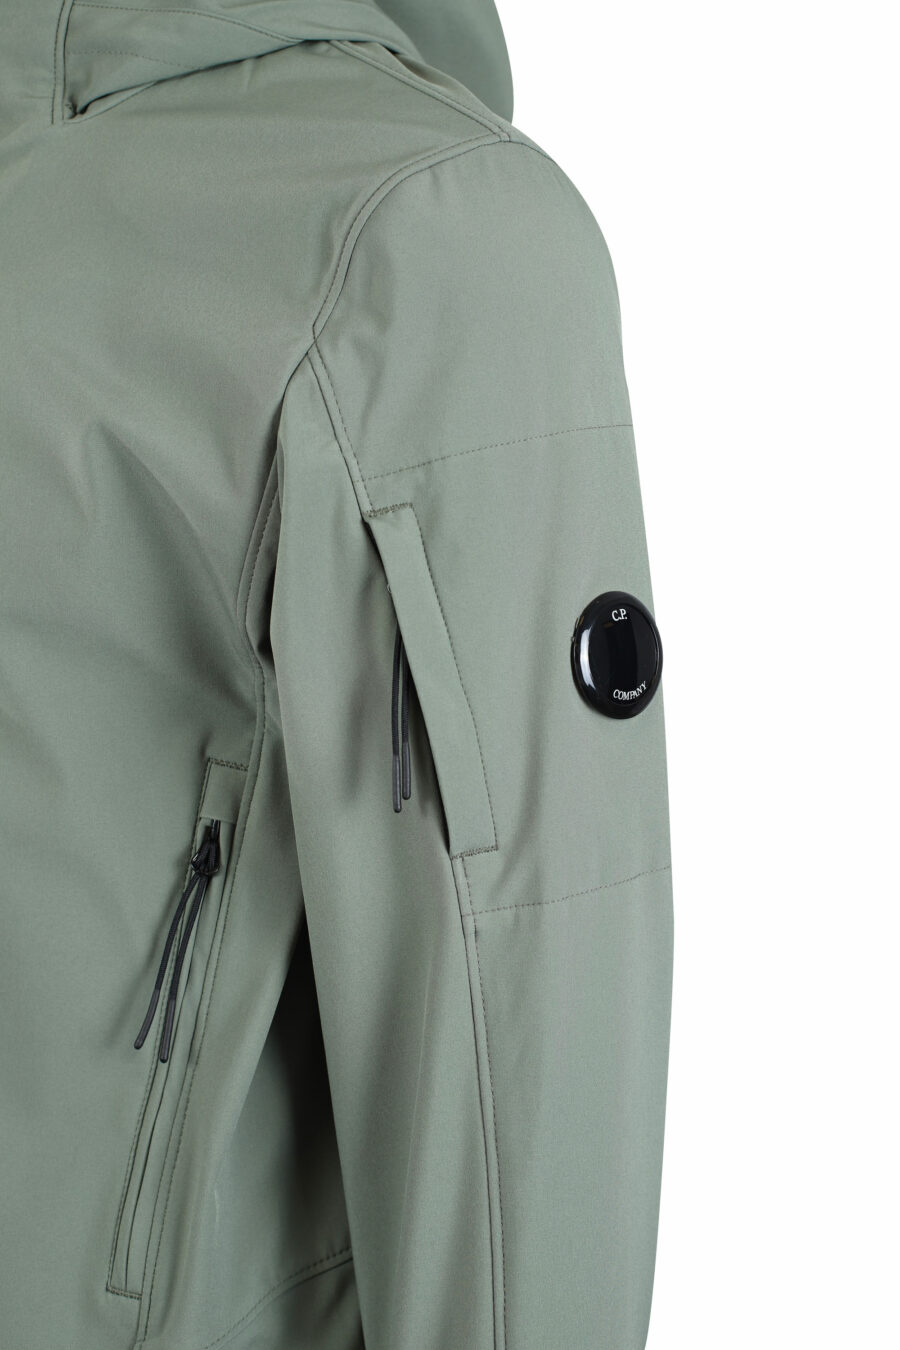 Veste vert militaire avec capuche et poche latérale avec mini-logo circulaire - IMG 2687